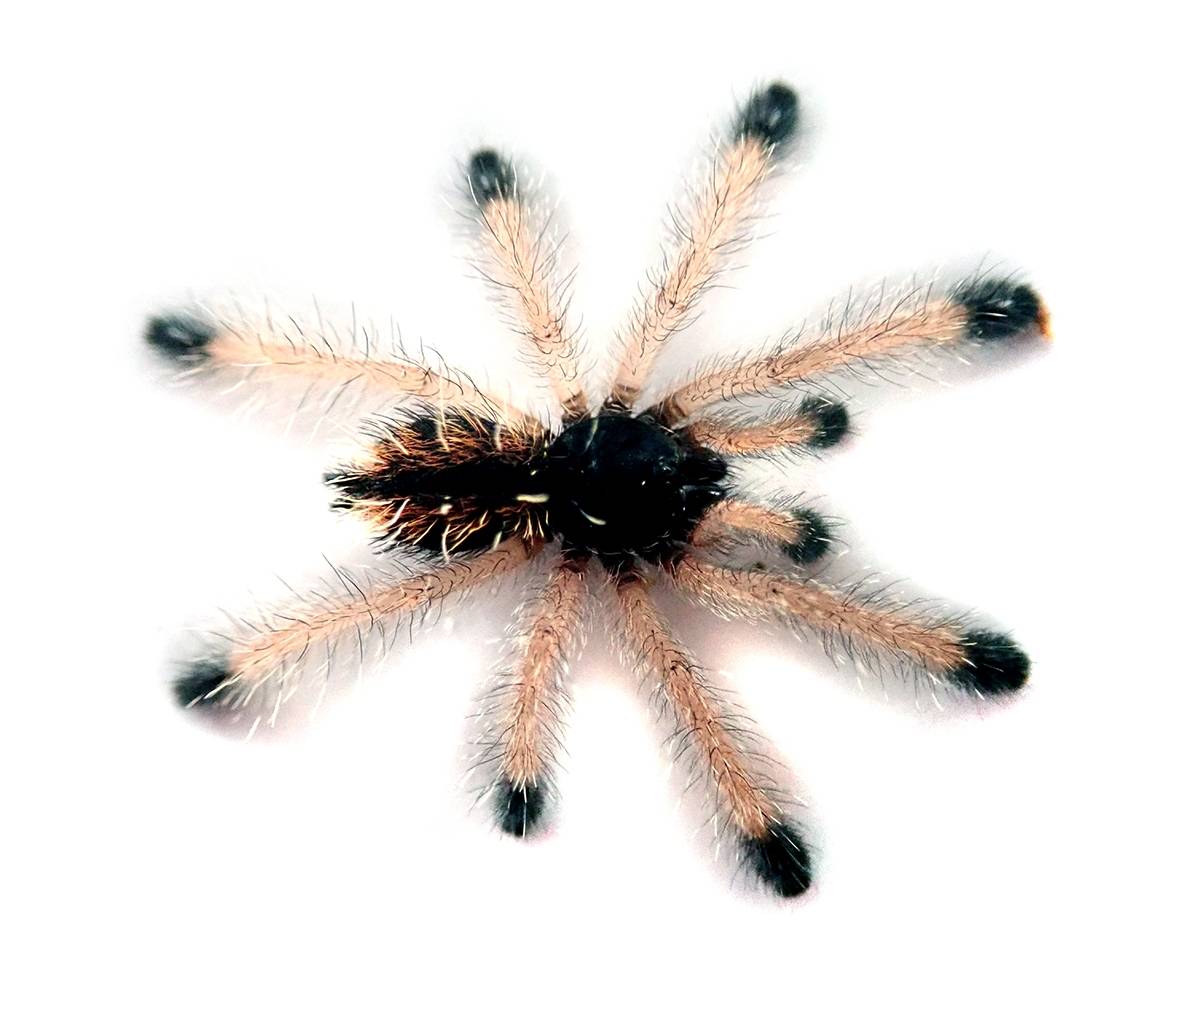 pink toe tarantula